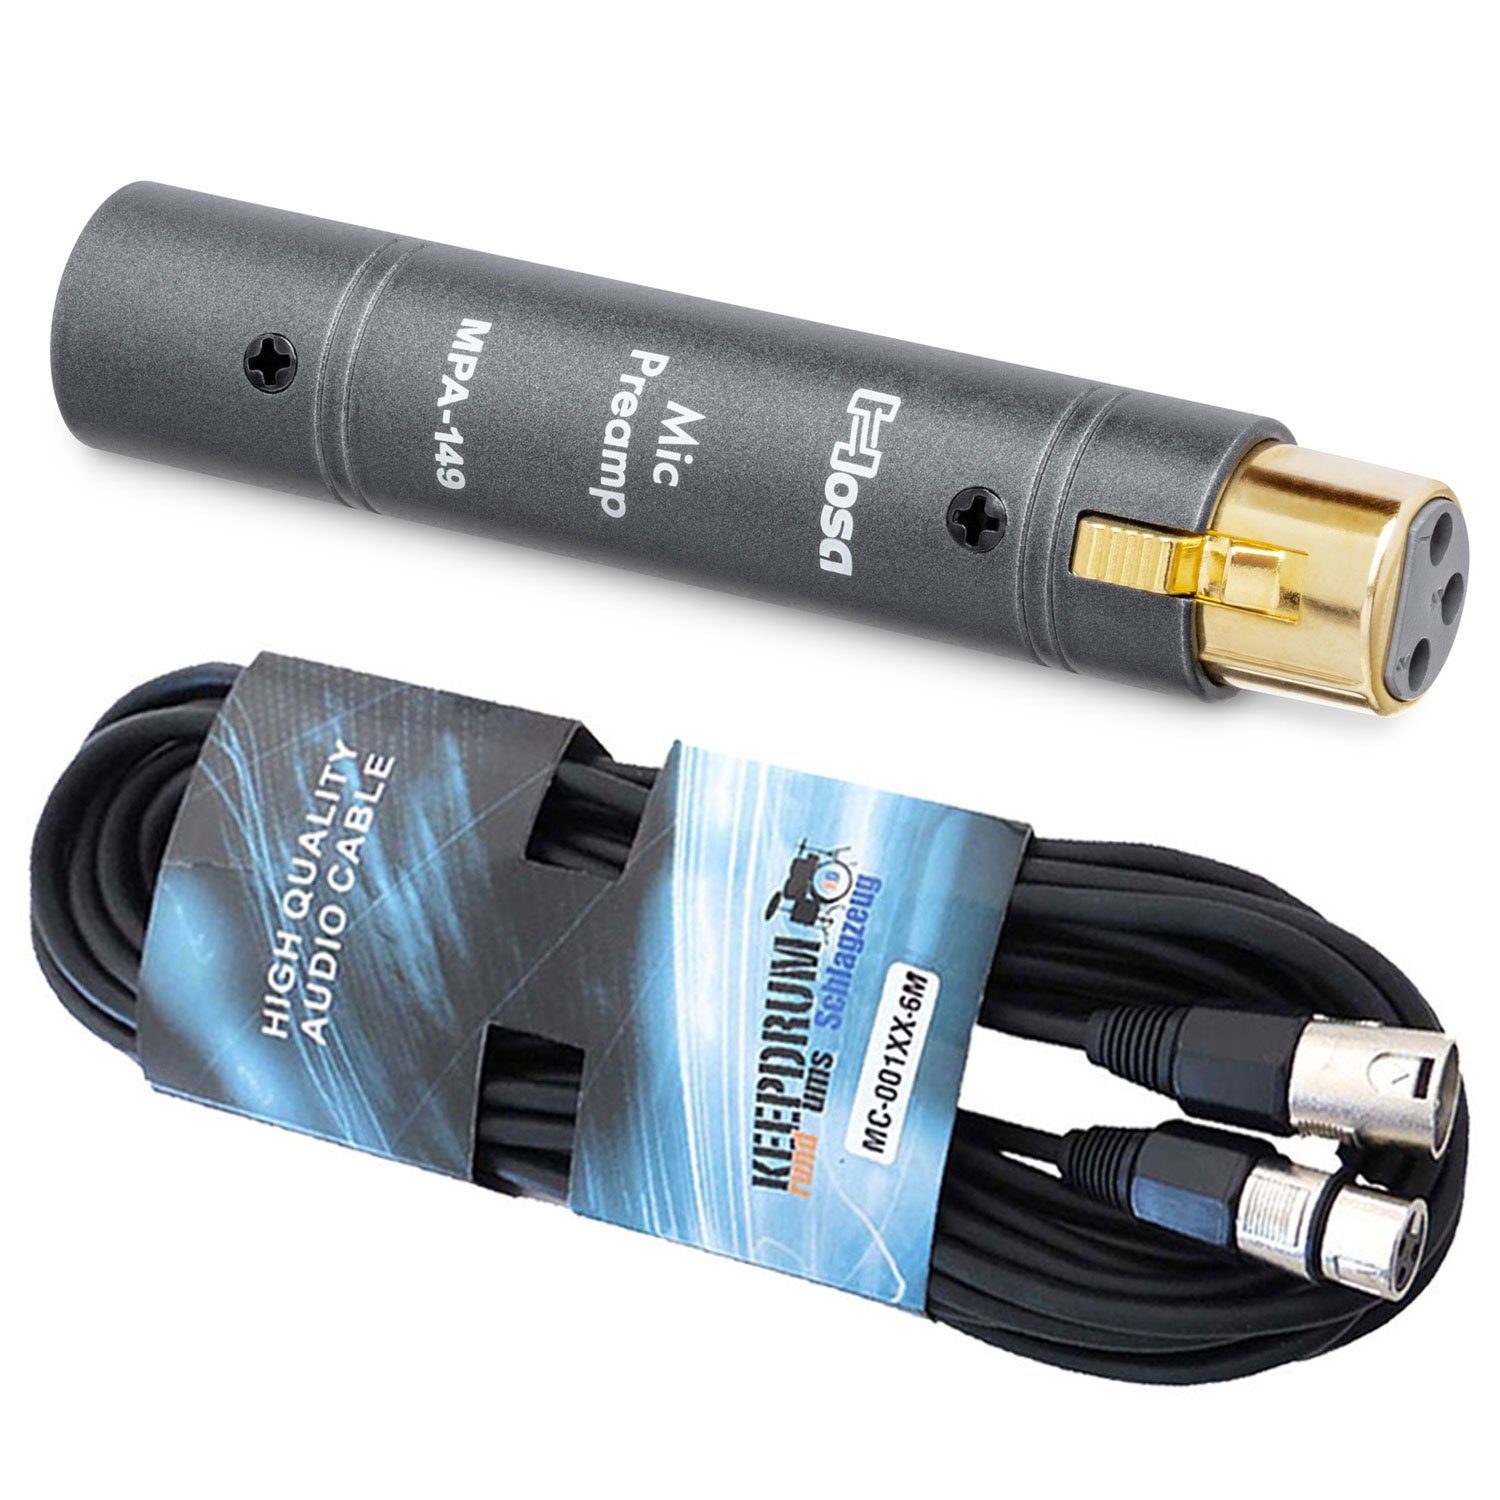 Kabel MPA-149 Hosa Vorverstärker Kanäle: (Anzahl 1) Mikrofon-Vorverstärker mit